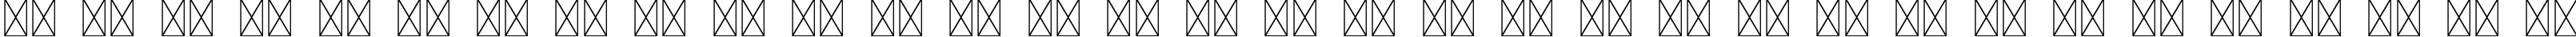 Пример написания русского алфавита шрифтом Signature